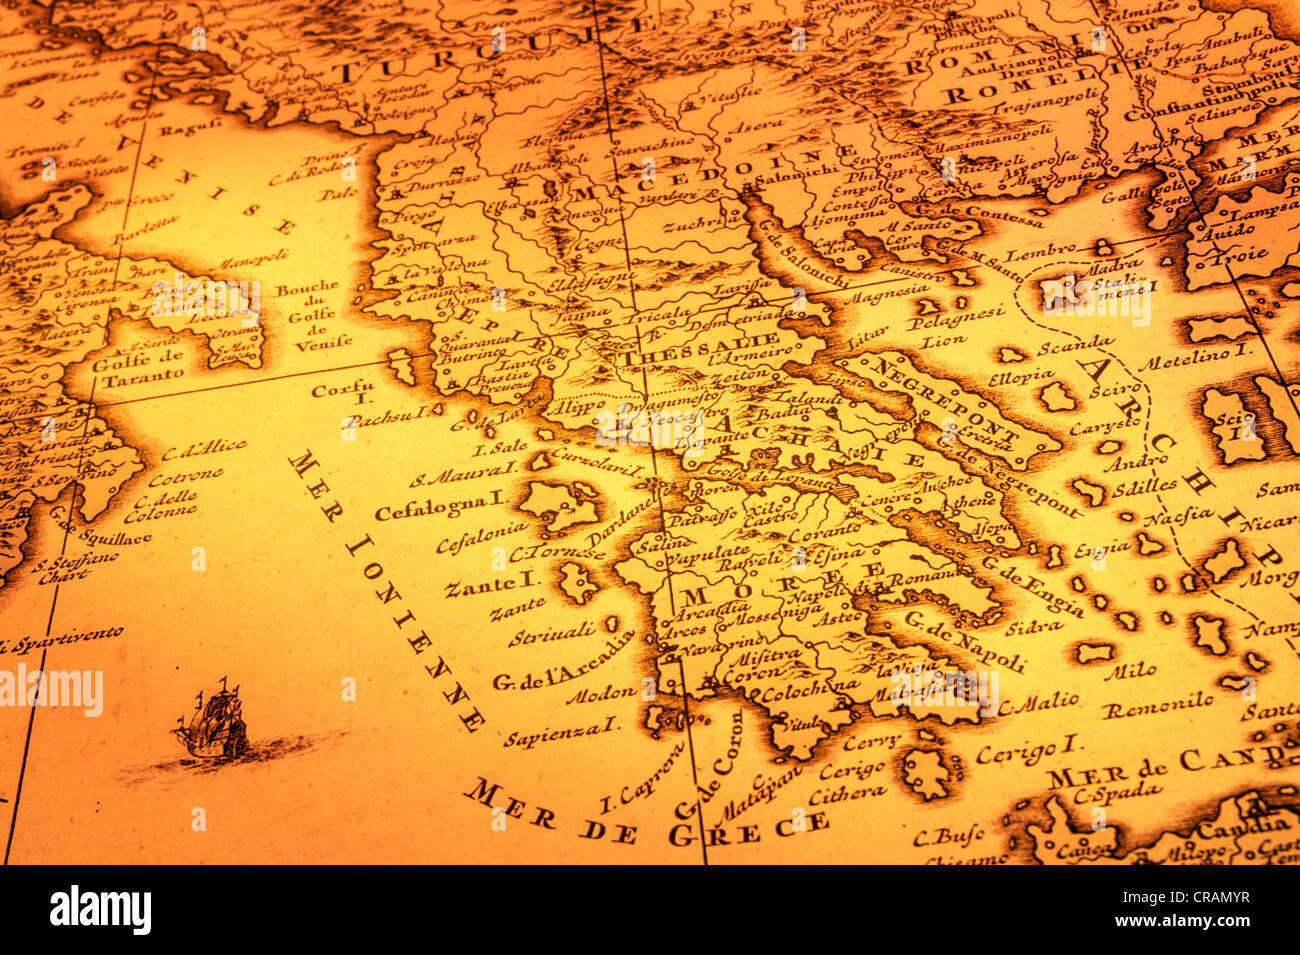 Carte ancienne de la Grèce, la Macédoine et le Sud de l'Italie. La carte est de 1680 et est en dehors du droit d'auteur. Banque D'Images